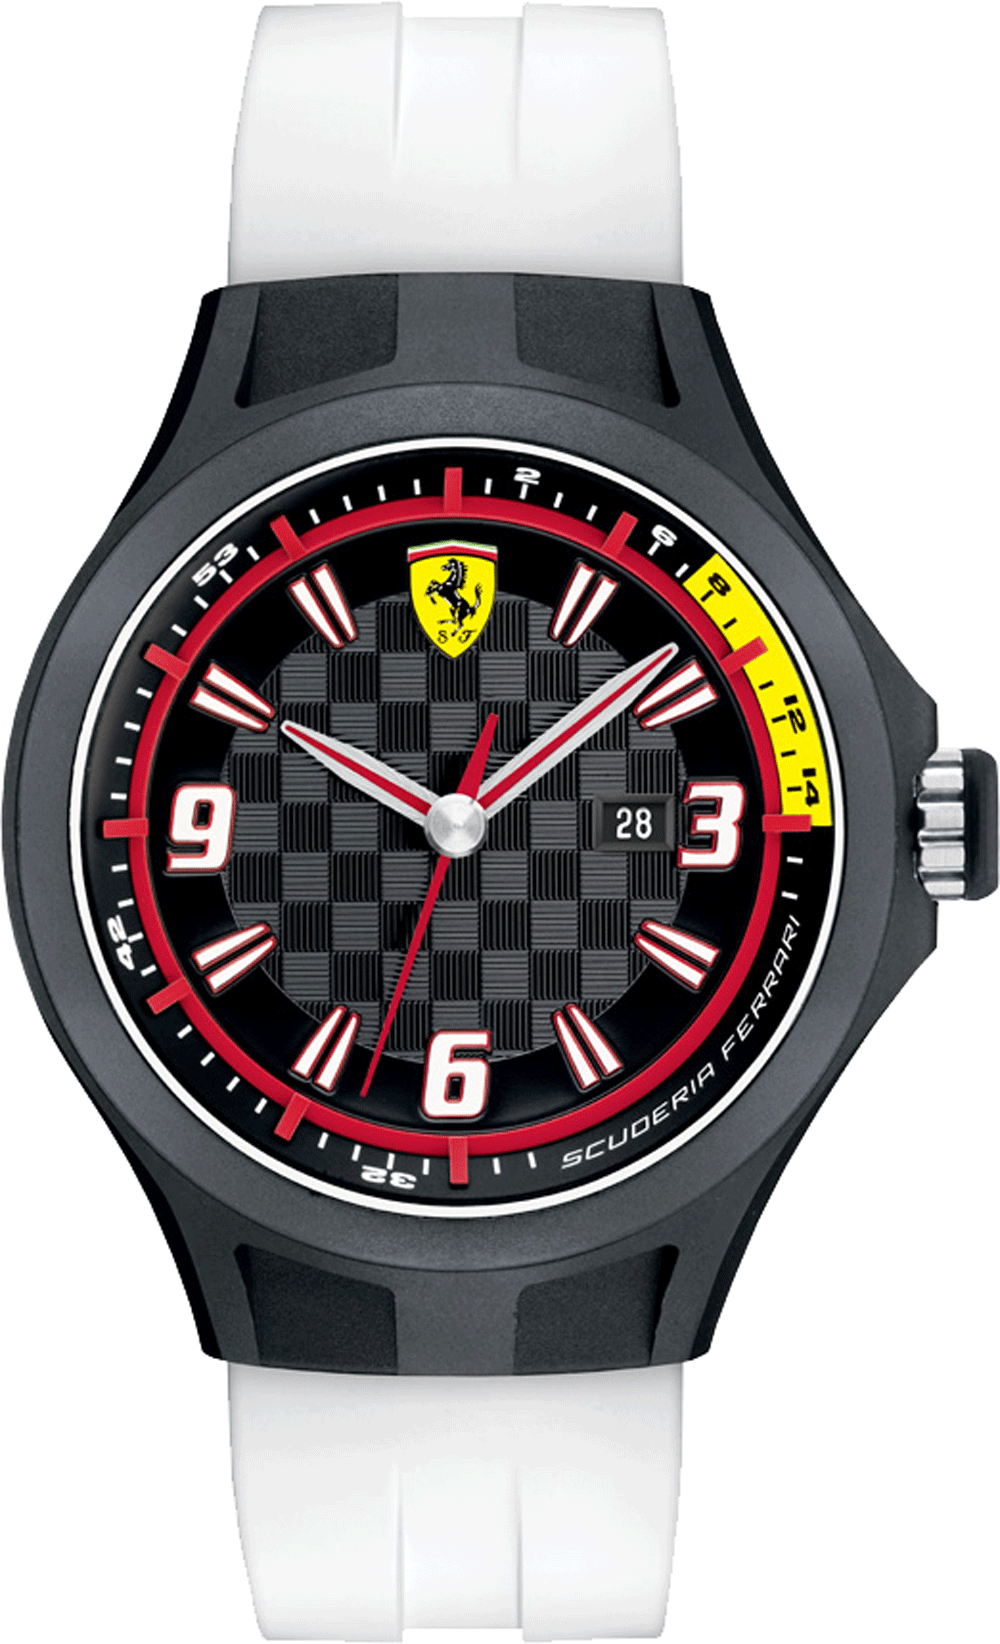 Ferrari часов. Часы Феррари Скудерия. Часы Феррари Скудерия оригинал. Наручные часы Ferrari 830157. SF 29.0.14.0372 Scuderia Ferrari часы.